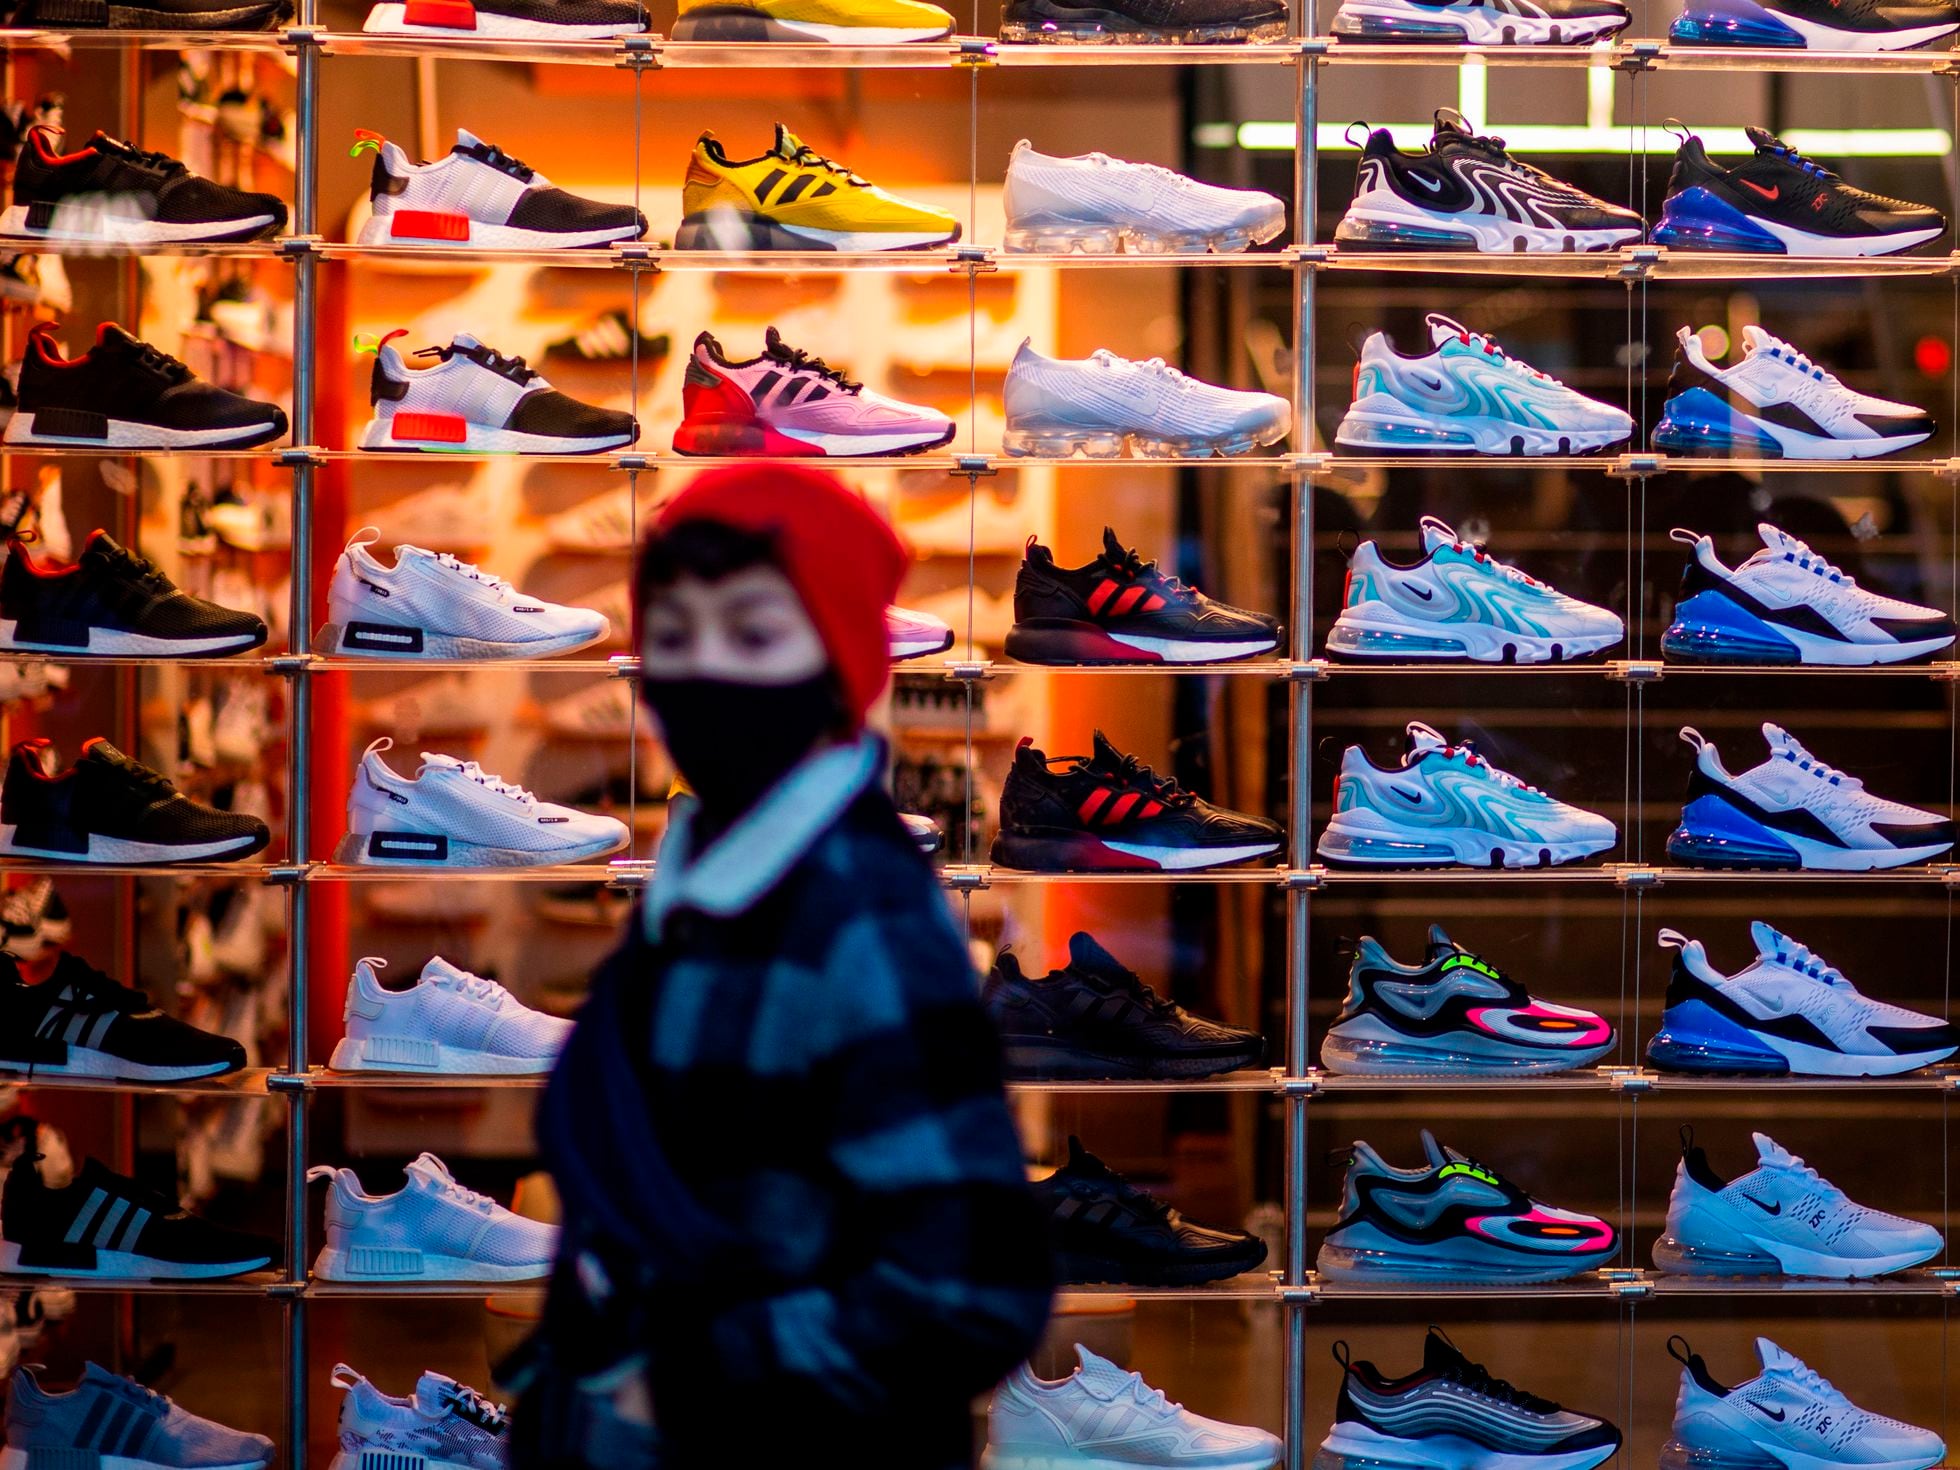 Girar Inspector vacante Sneakers': Las zapatillas se convierten en un activo de inversión para  muchos jóvenes | Negocios | EL PAÍS